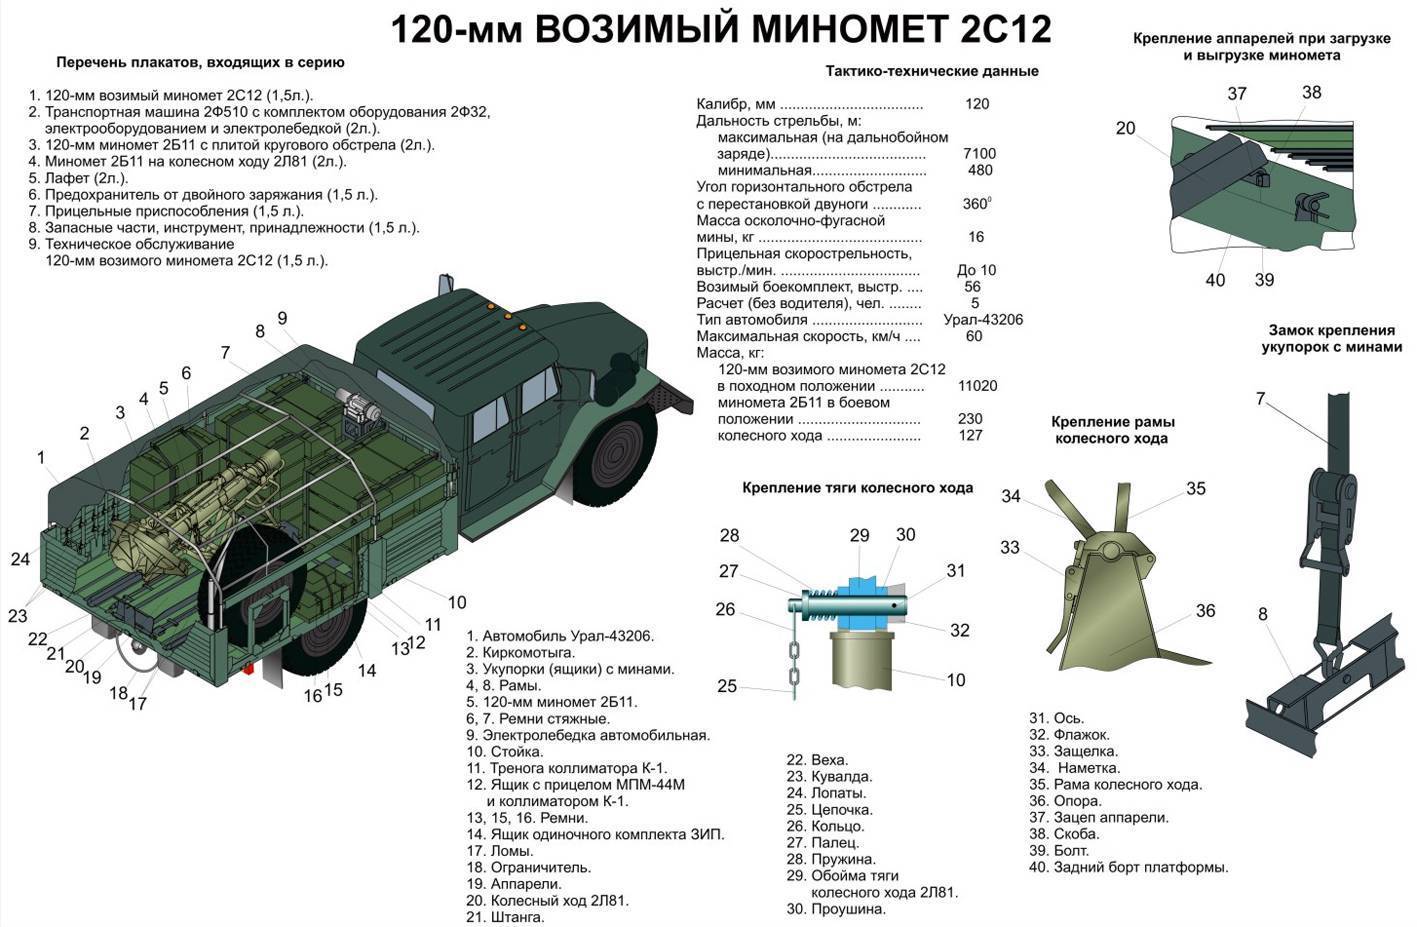 Что за новый самоходный миномет «дрок» получат российские десантники?